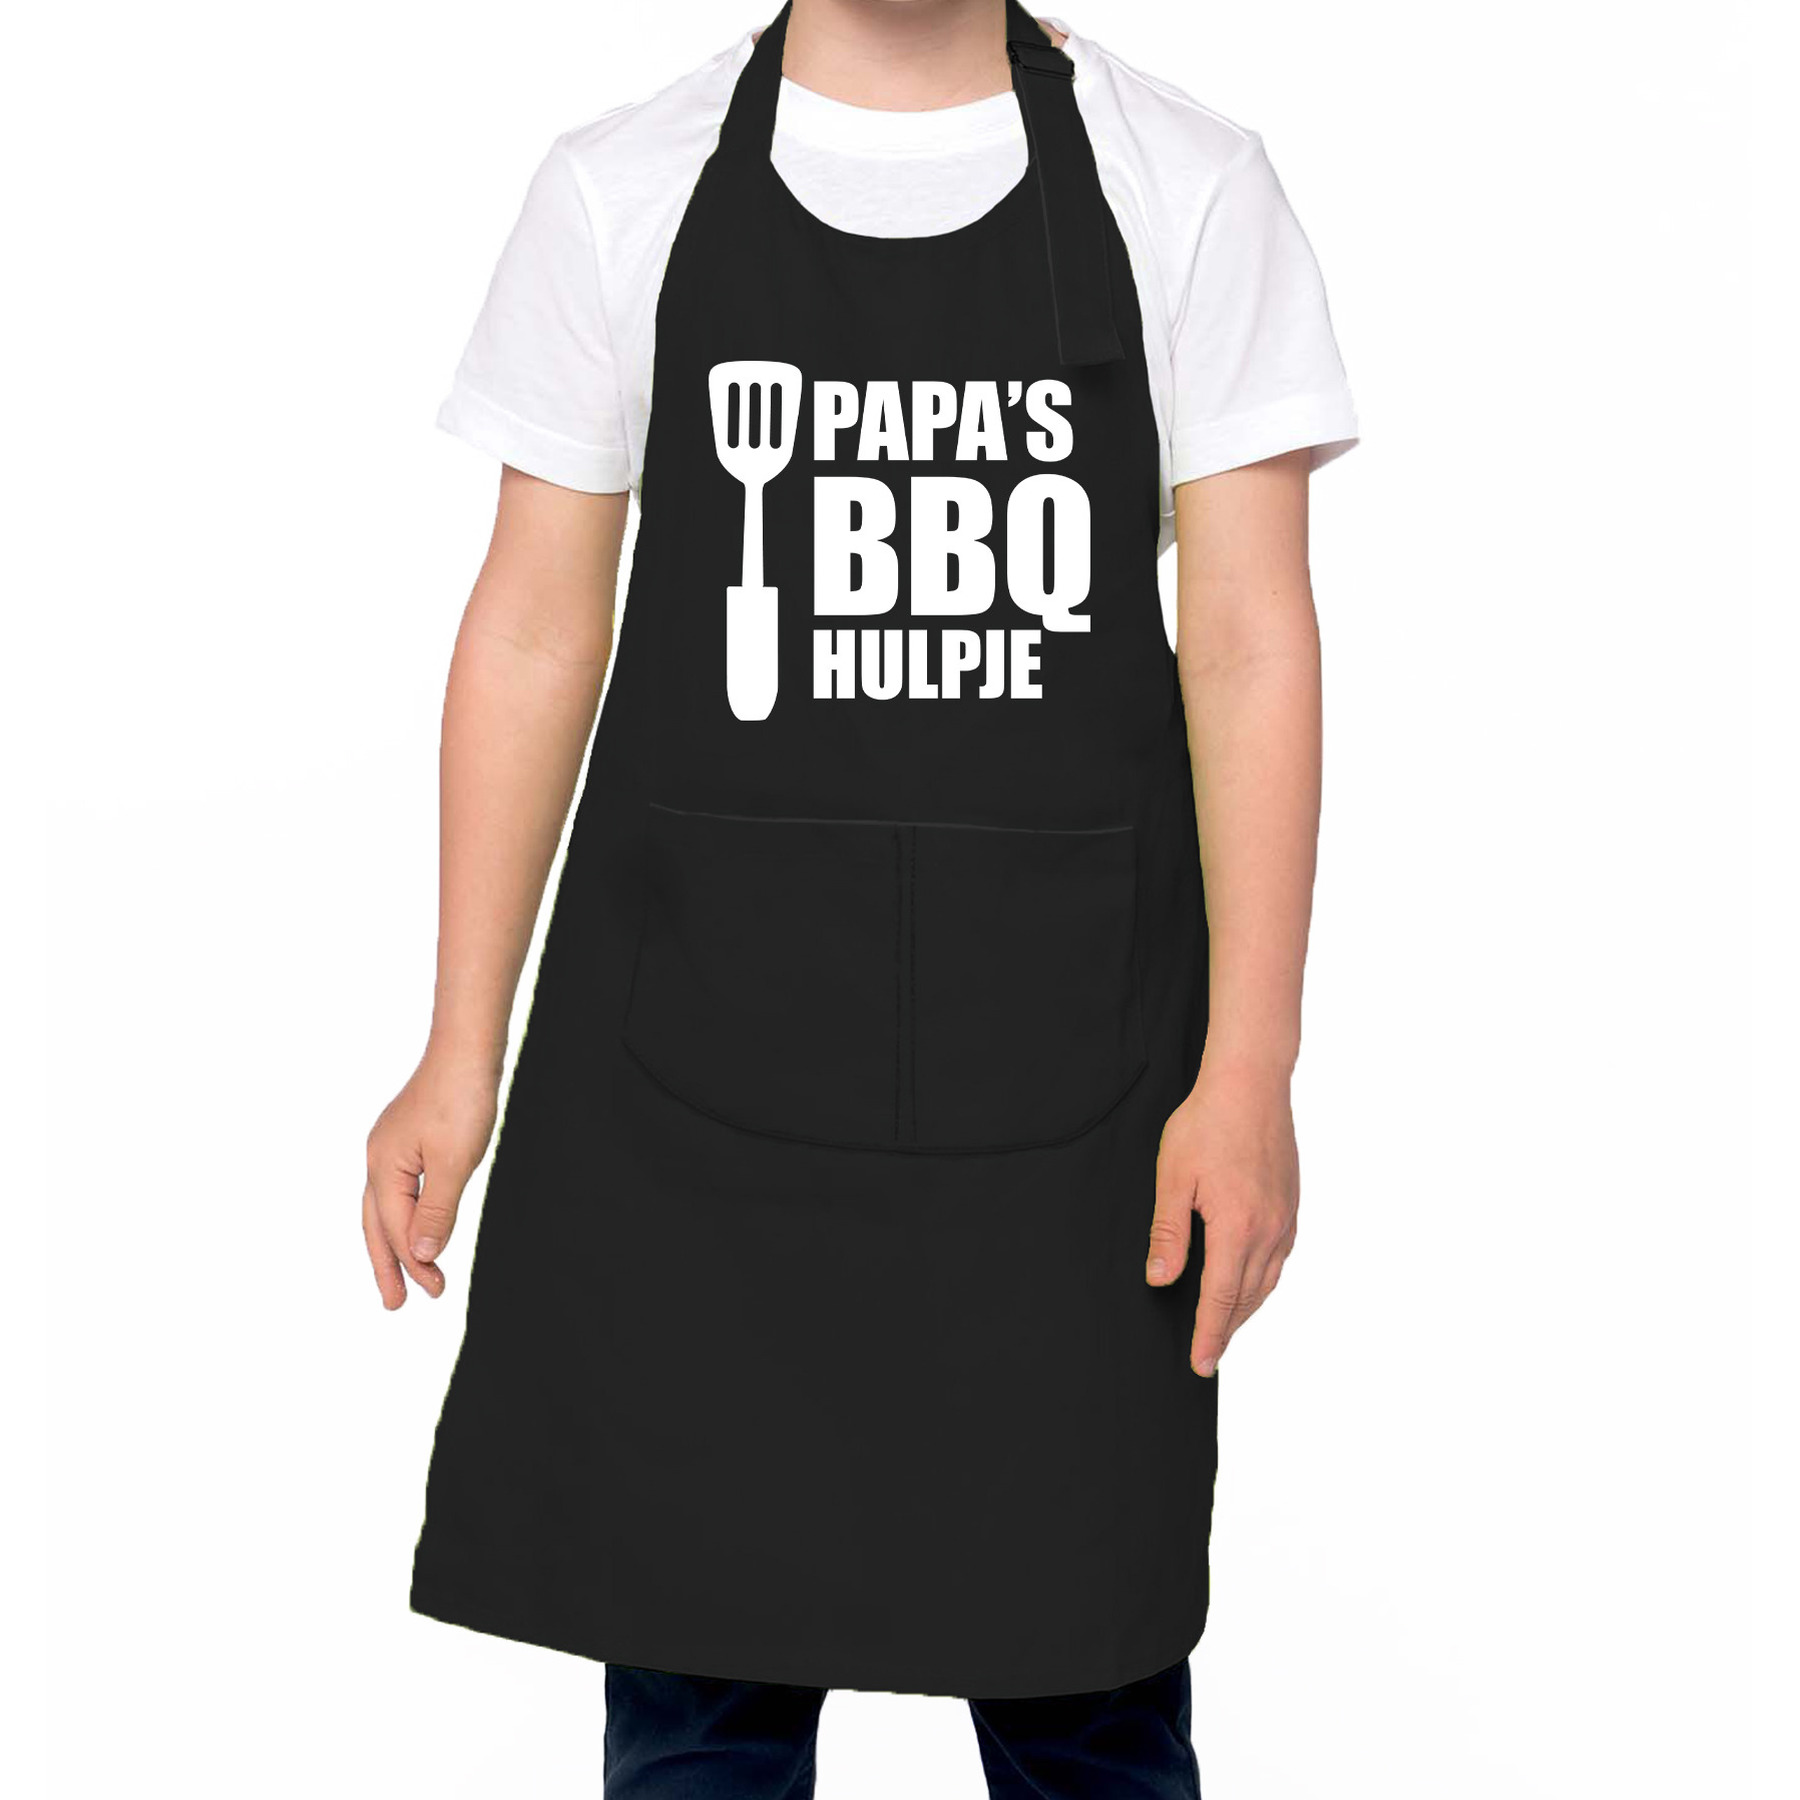 Papa s BBQ hulpje Barbecue schort kinderen- bbq keukenschort kind zwart voor jongens en meisjes